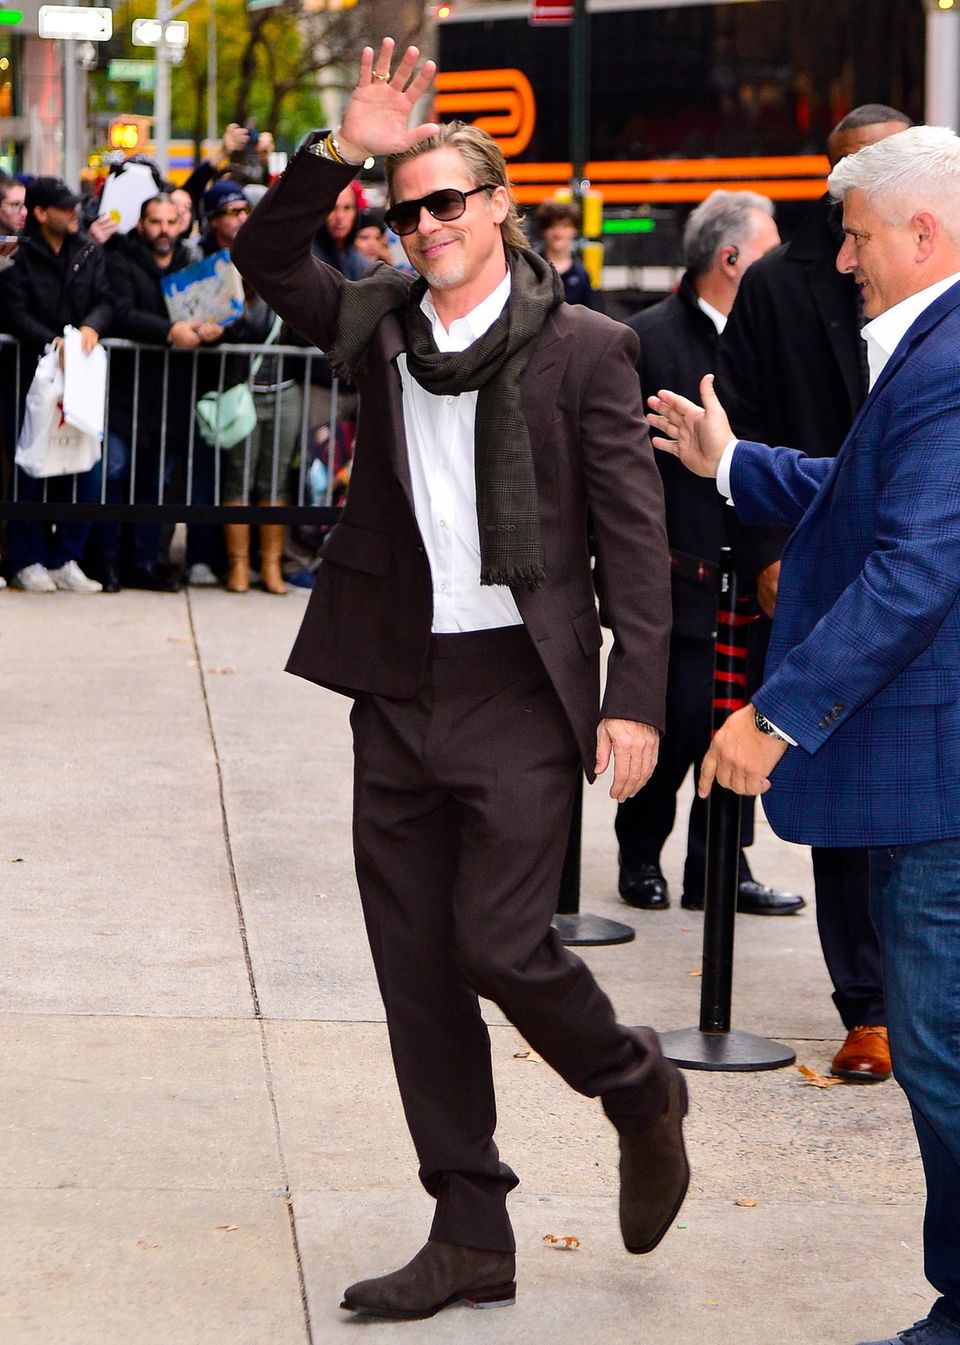 Die gute Laune bleibt, der Look ist definitiv anders. Denn, Brad Pitt mag es zuweilen auch elegant. In New York City winkt er seinen Fans im geschmackvollen Anzug und den passenden Wildleder-Stiefeln entgegen. Mit der Pilotenbrille und dem locker gewickelten Schal wirkt er nicht nur edgy, sondern auch wie ein wahrer Hollywood-Star. 